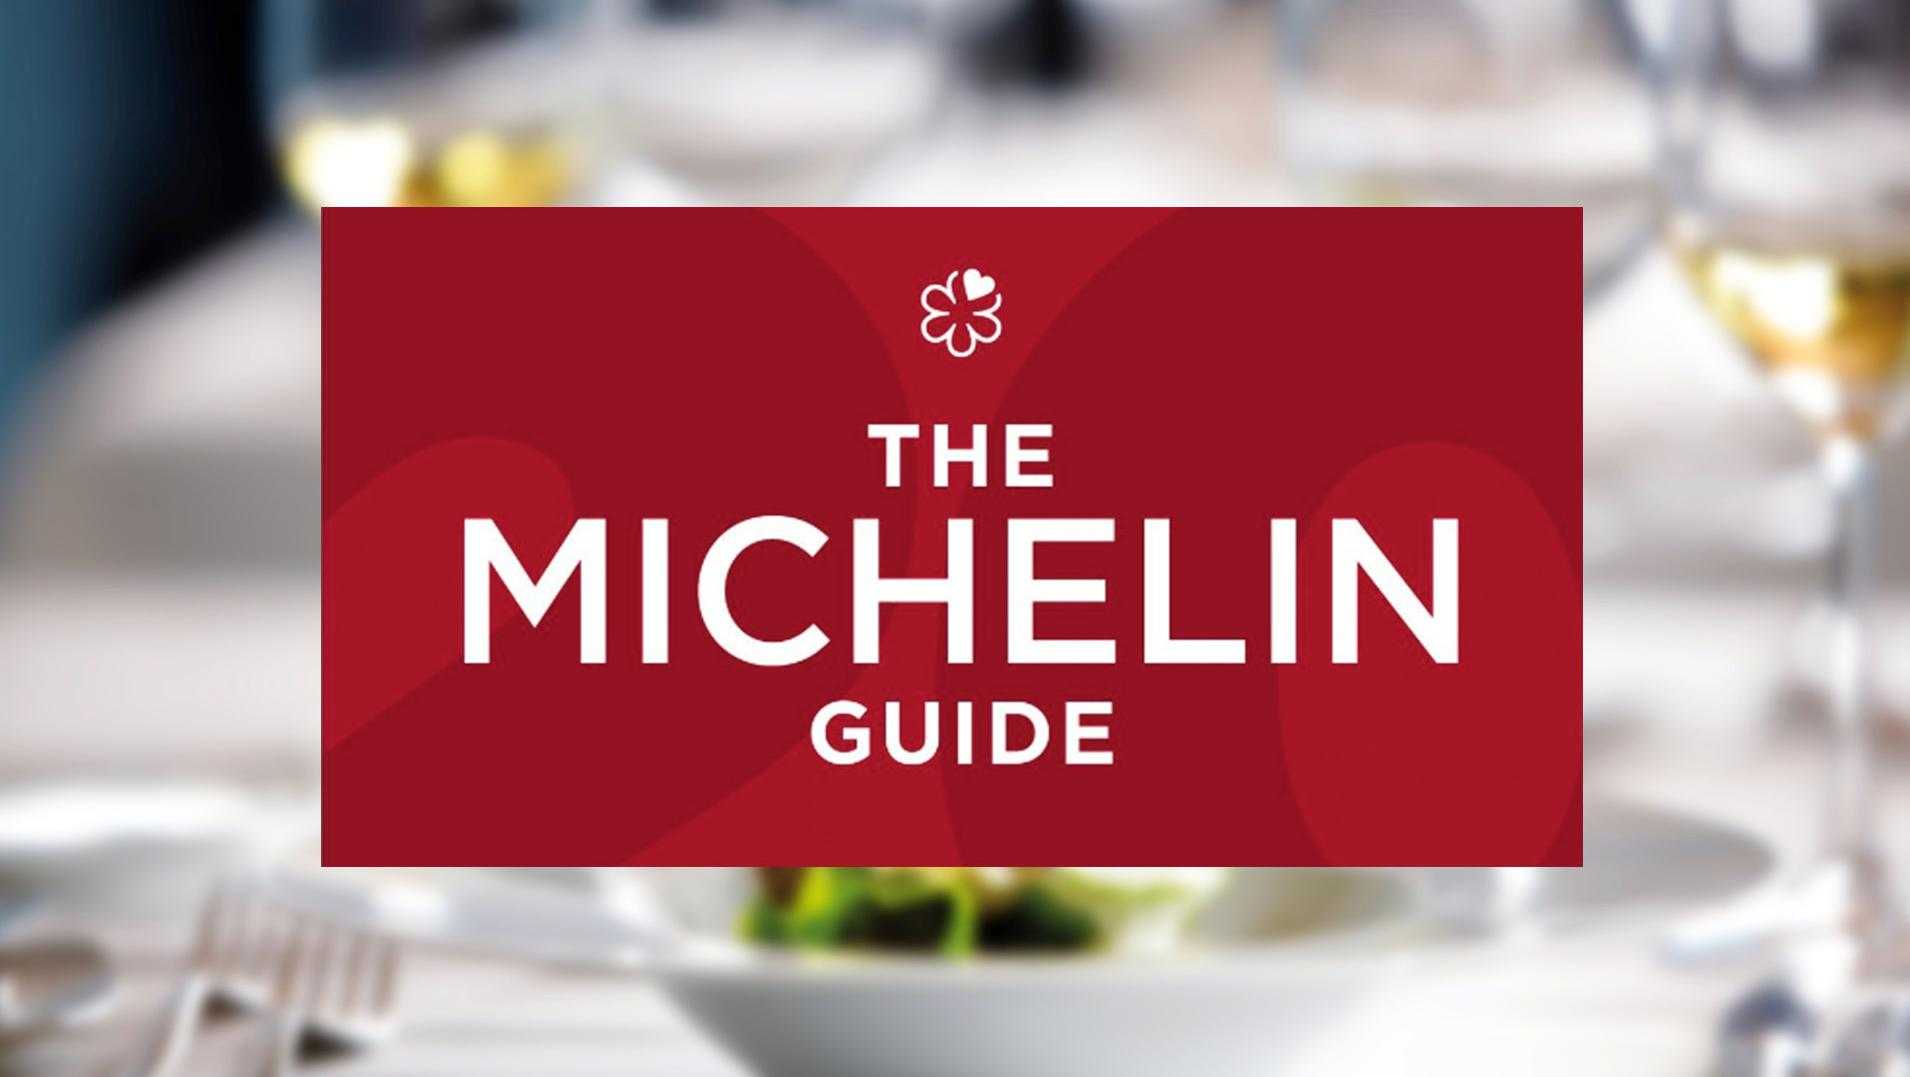 Рестораны со звездами michelin в россии